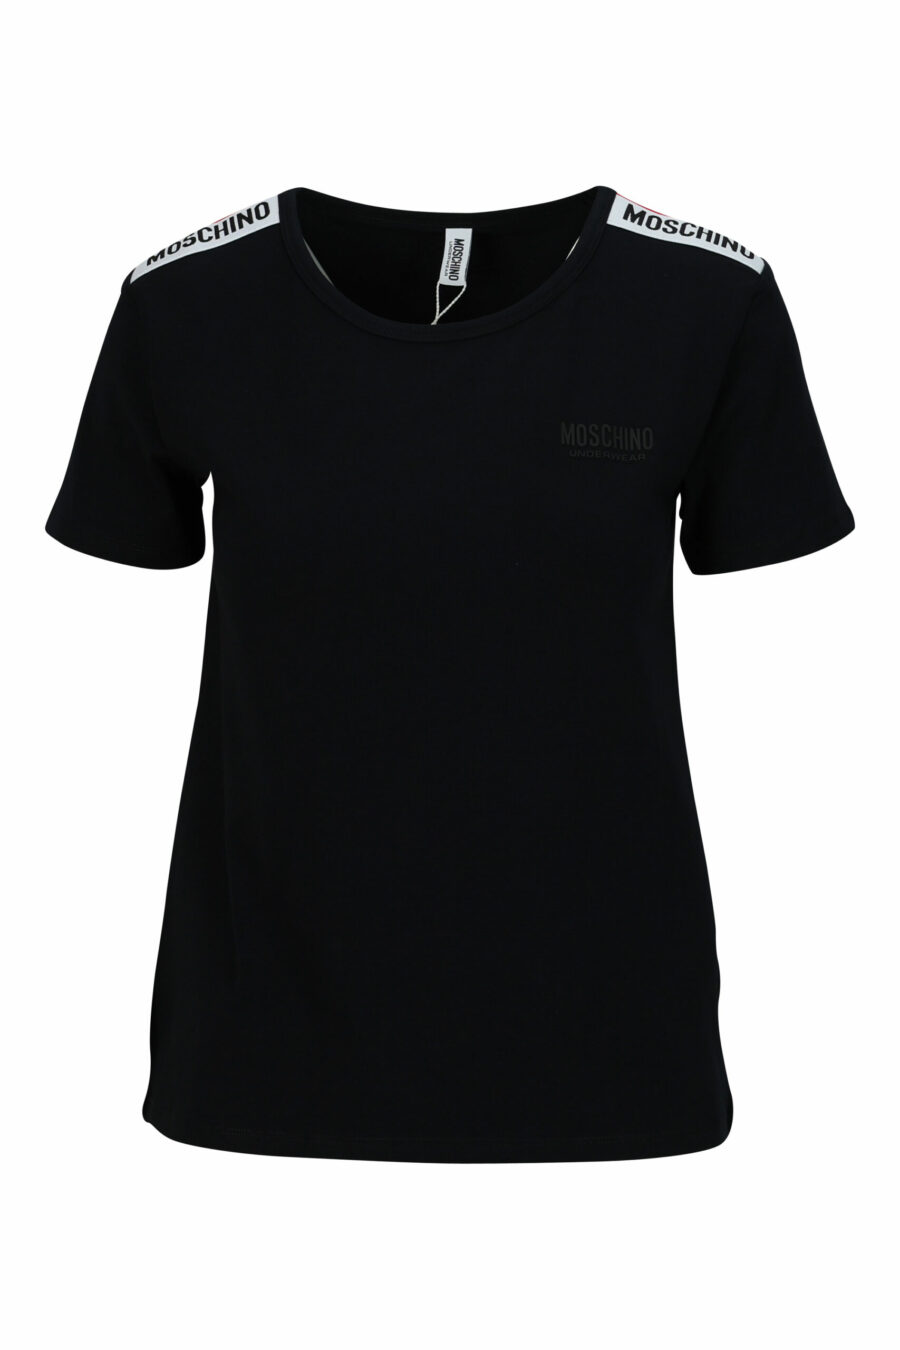 T-shirt noir avec bande d'épaule à logo monochrome - 667113696690 scaled